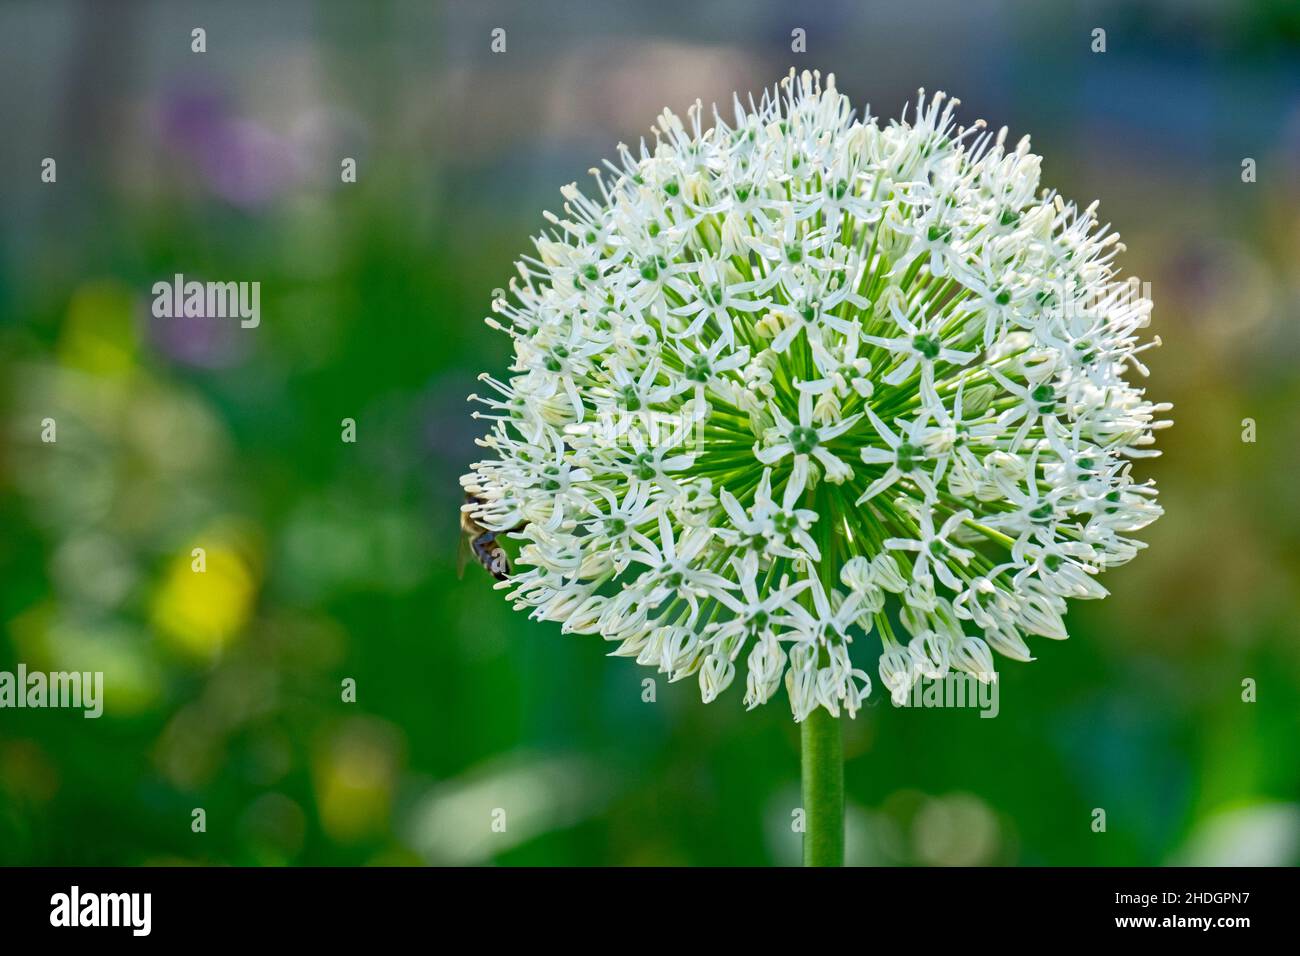 inflorescence, allium, allium flower, inflorescences, alliums, allium flowers Stock Photo